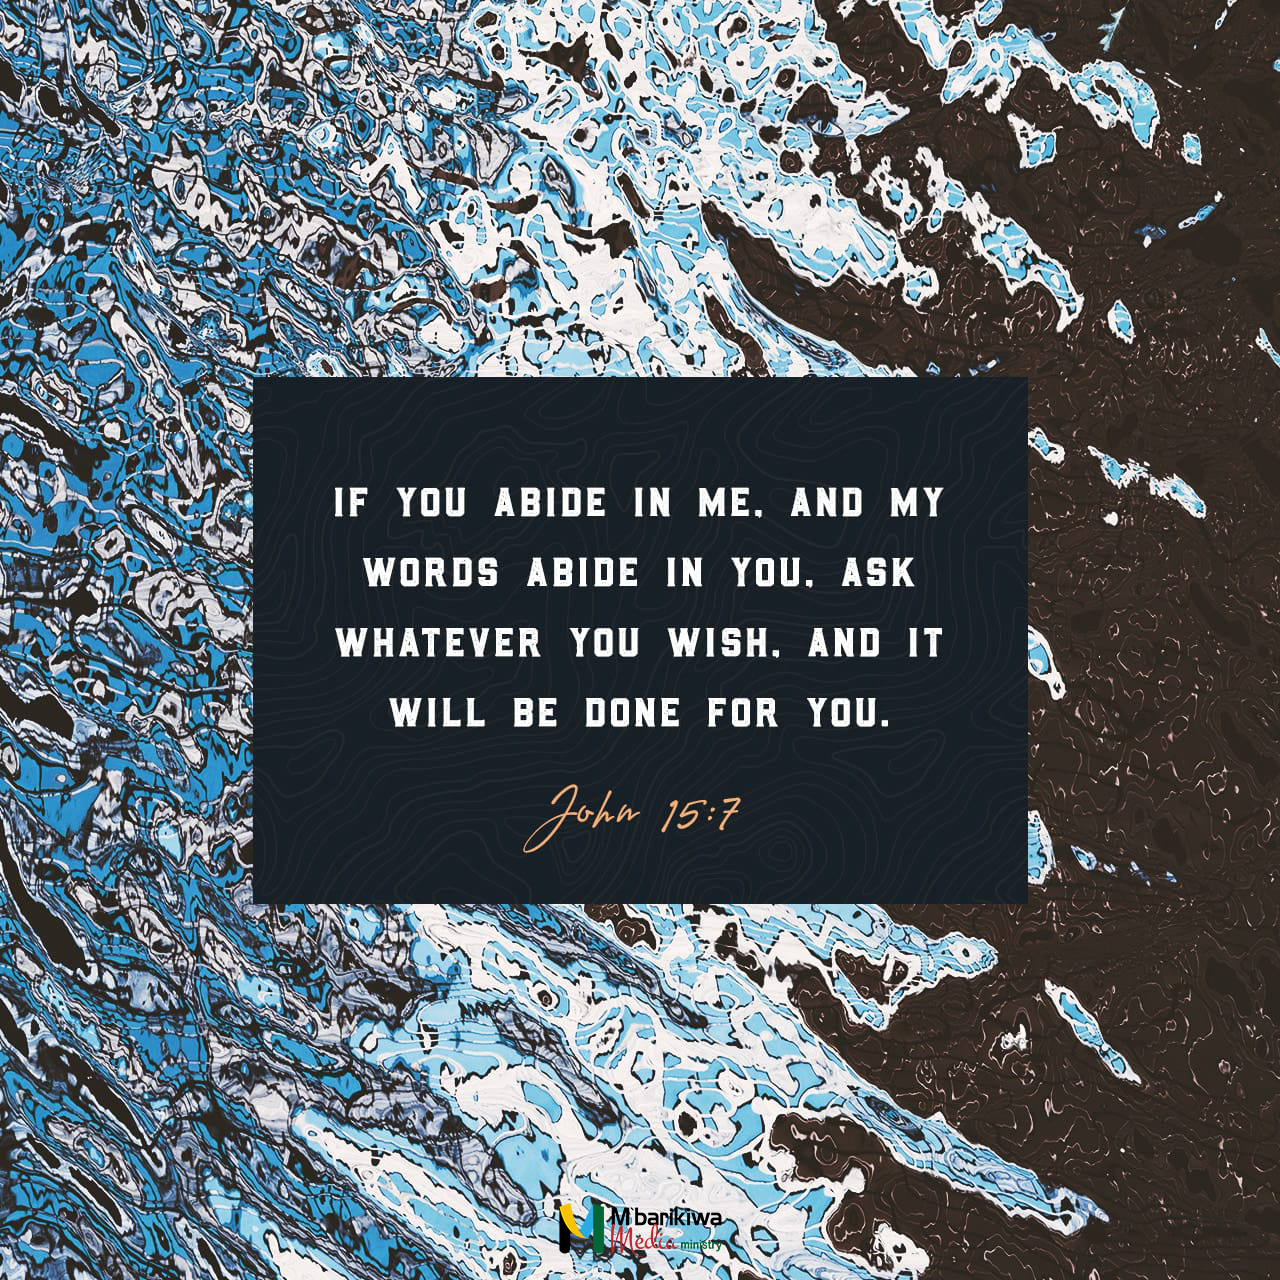 John 15:7 NIV